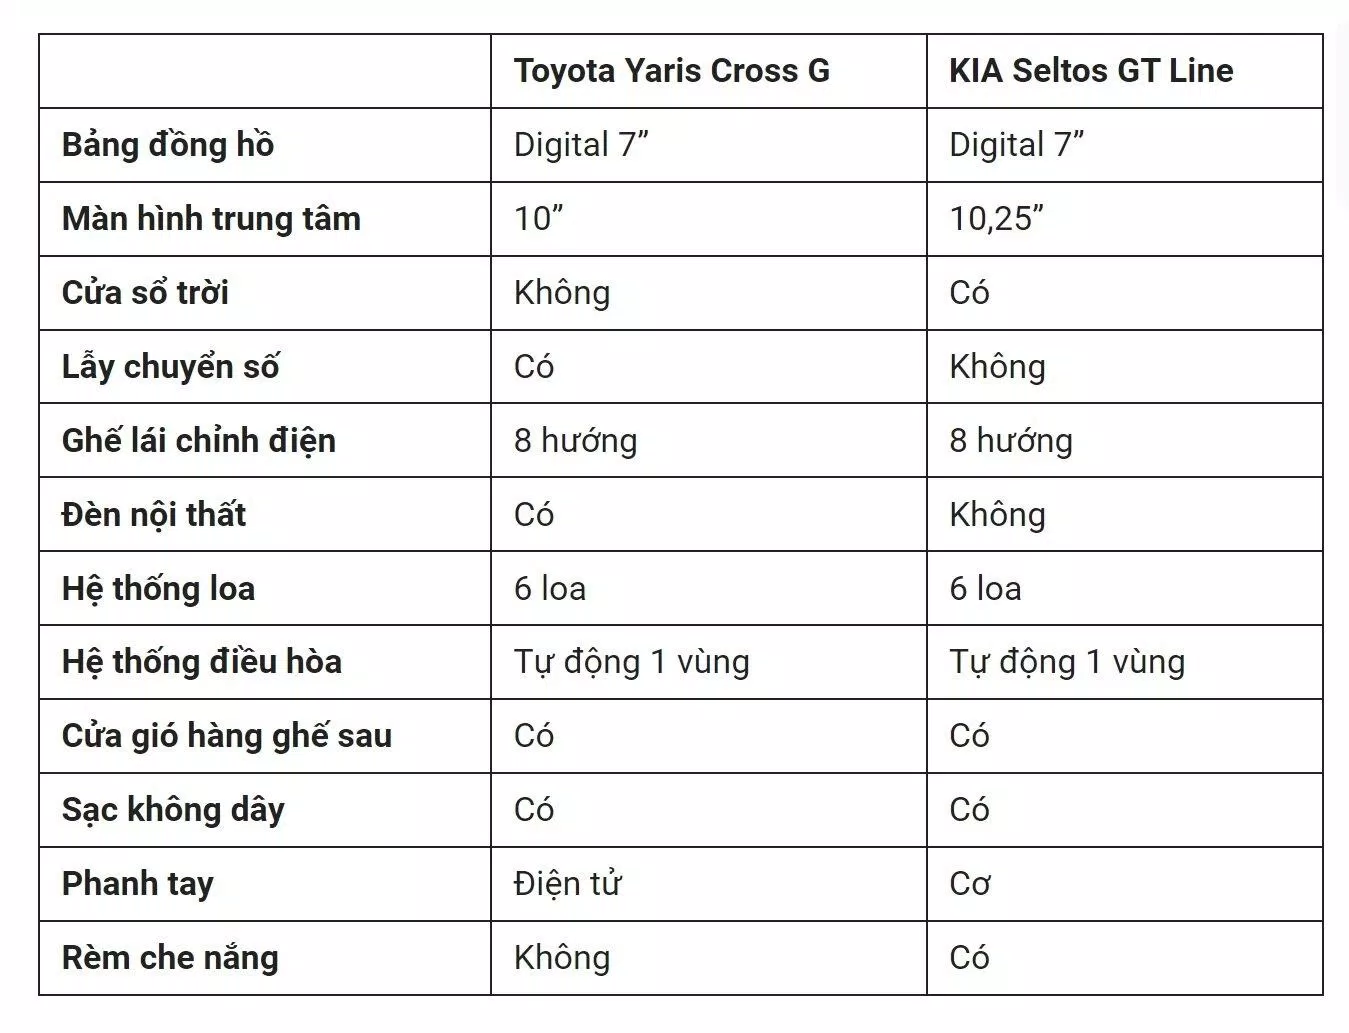 Thông số nội thất của Toyota Yaris Cross G và KIA Seltos GT-Line (Ảnh: Internet)